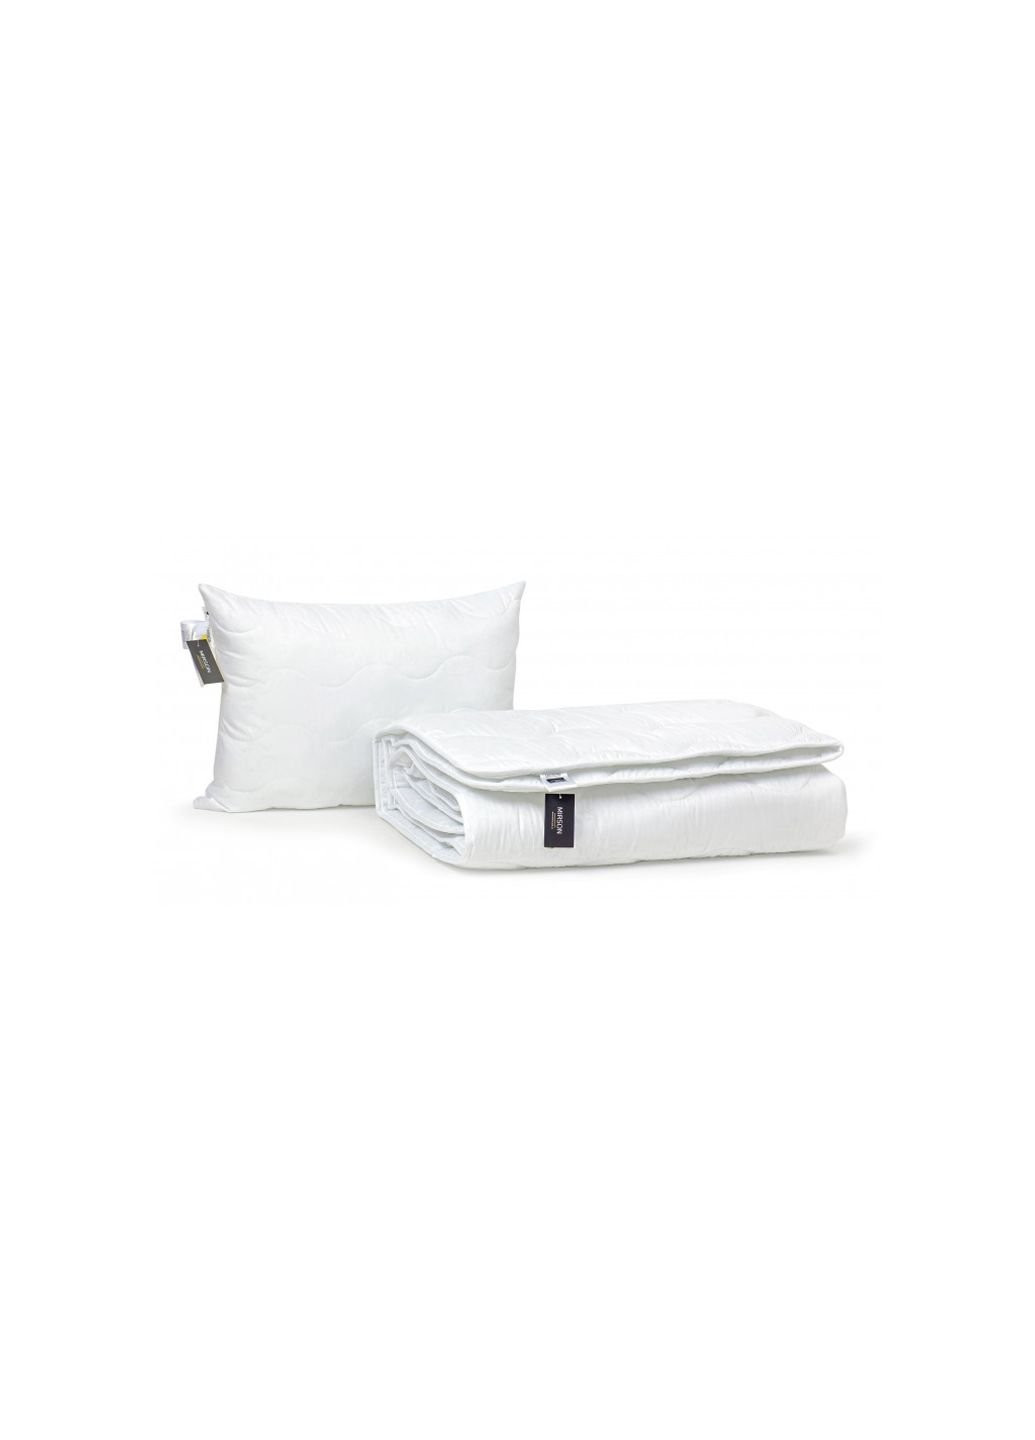 Одеяло MirSon Набор Eco-Soft Всесезонный 1693 Eco Light White Одеяло + под (2200002655330) No Brand (254009263)